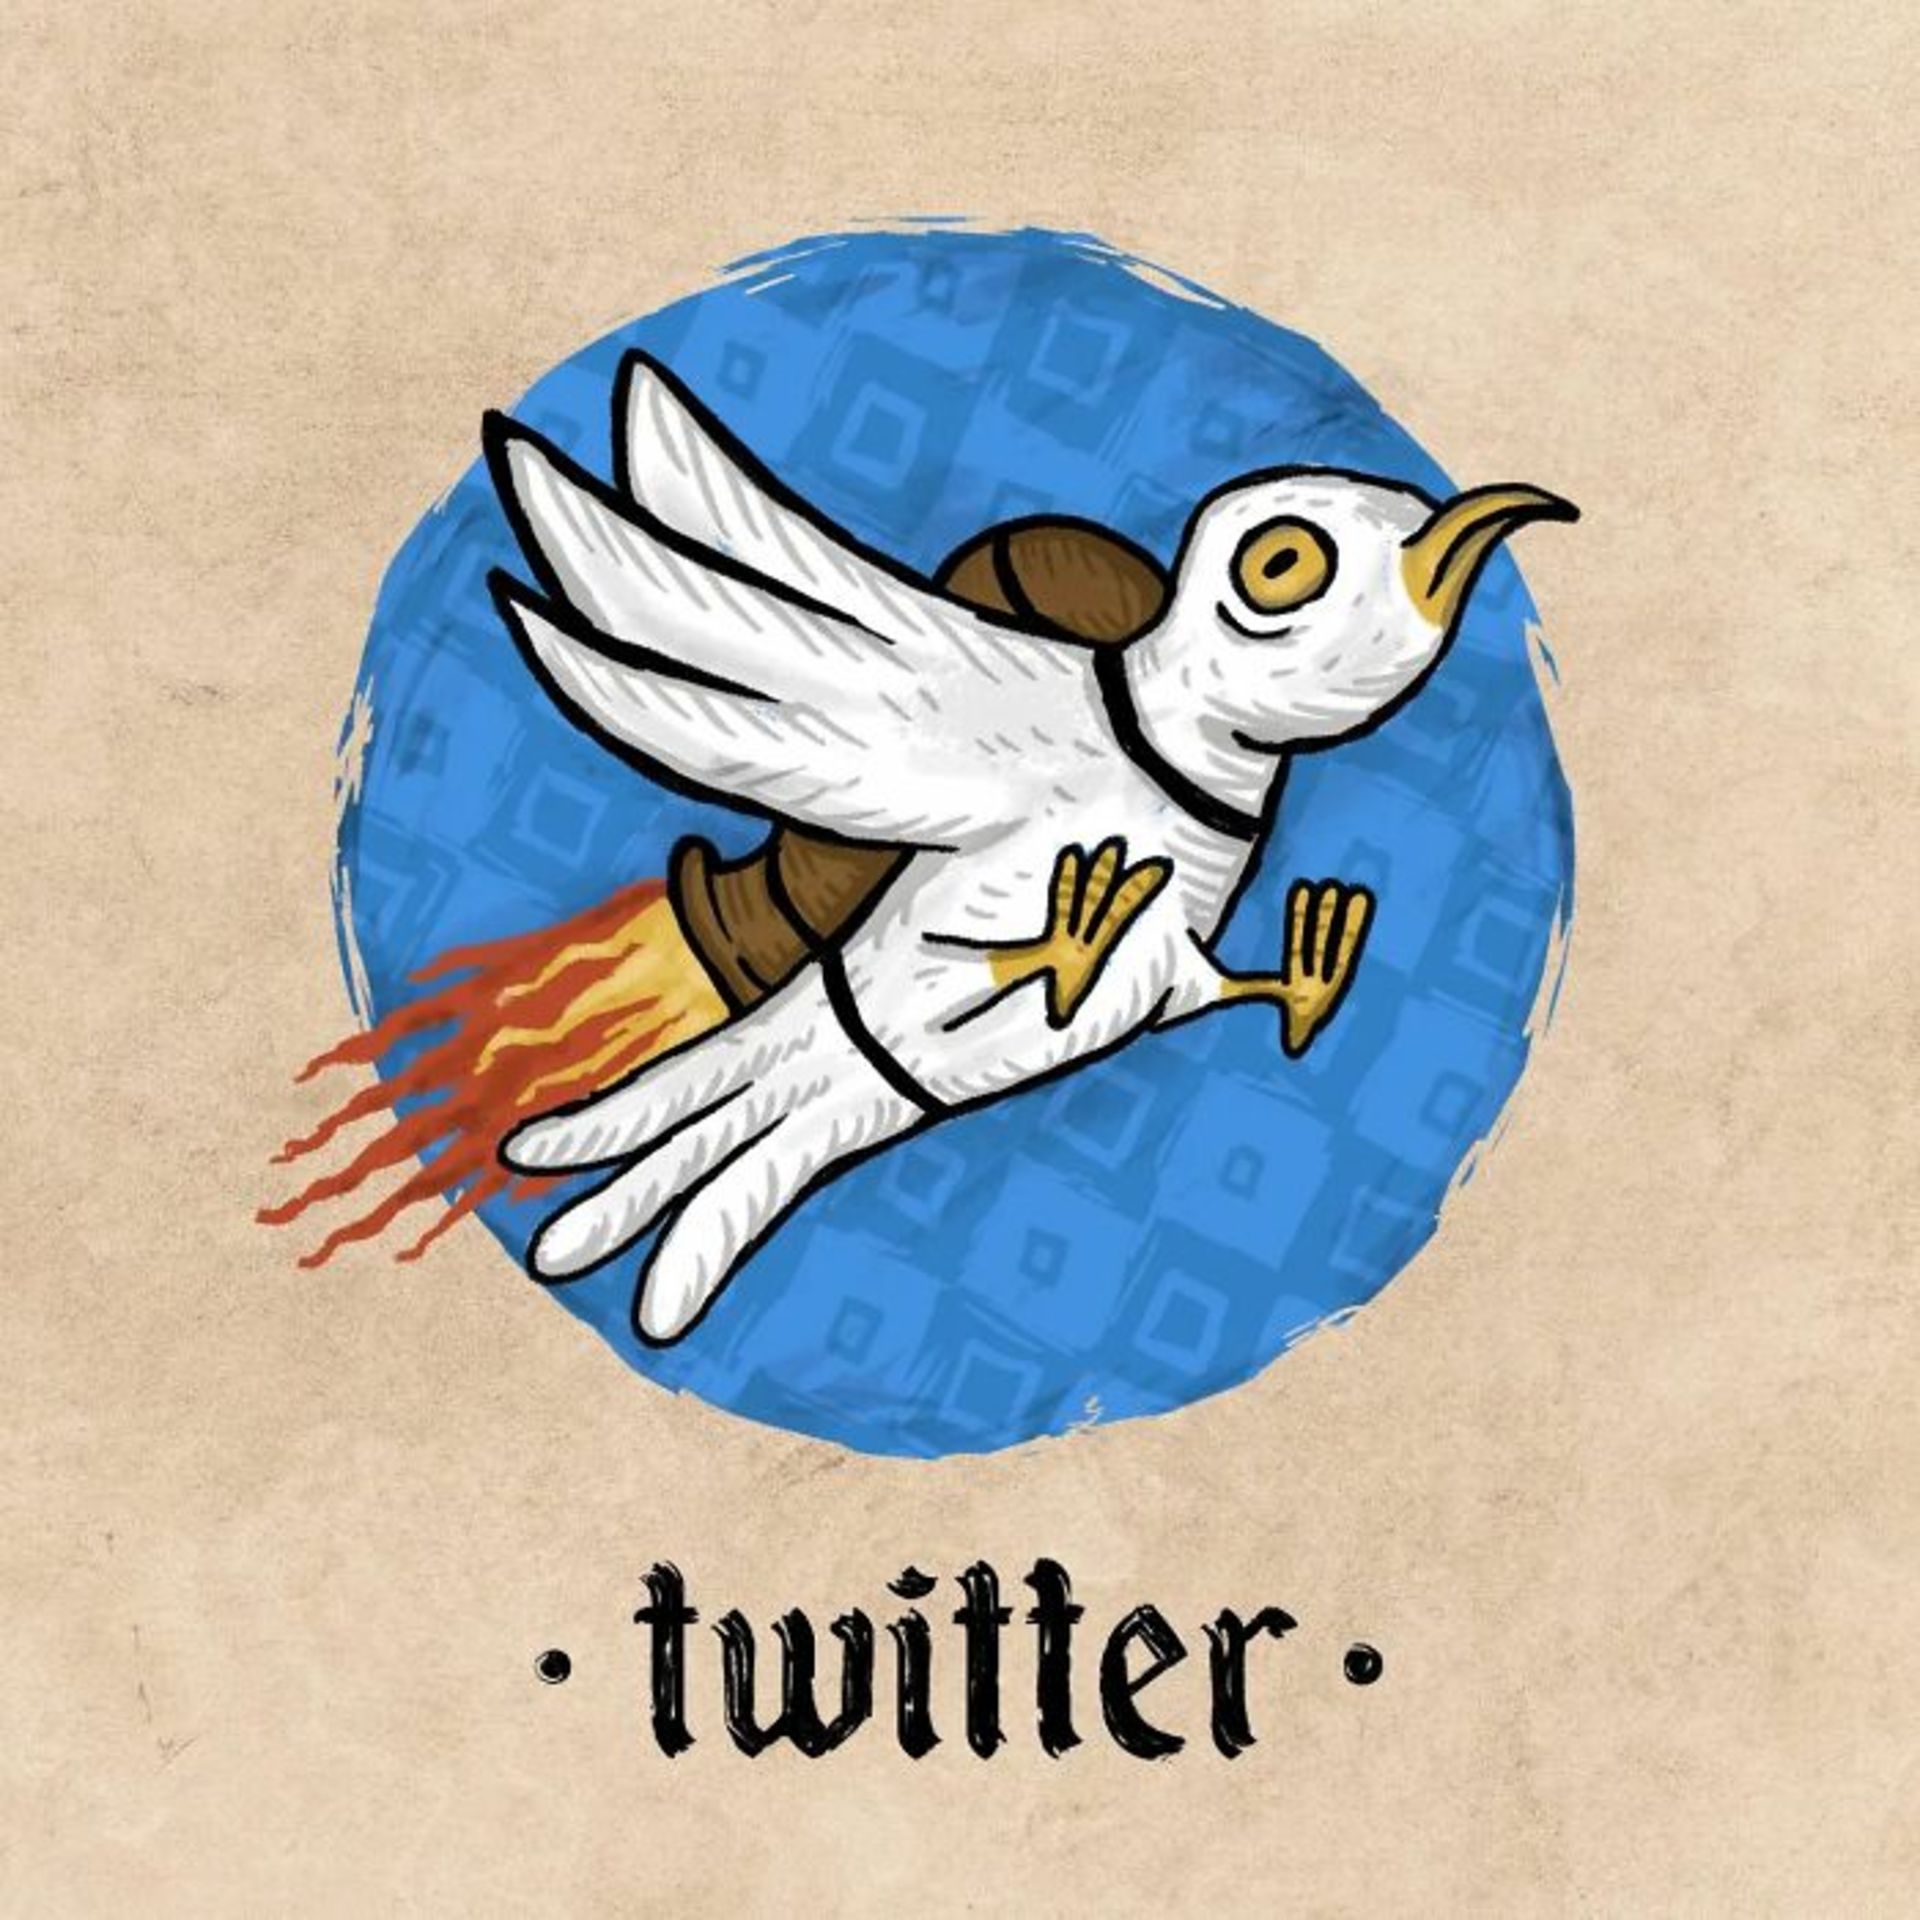 لوگوی توییتر به سبک قرون وسطی